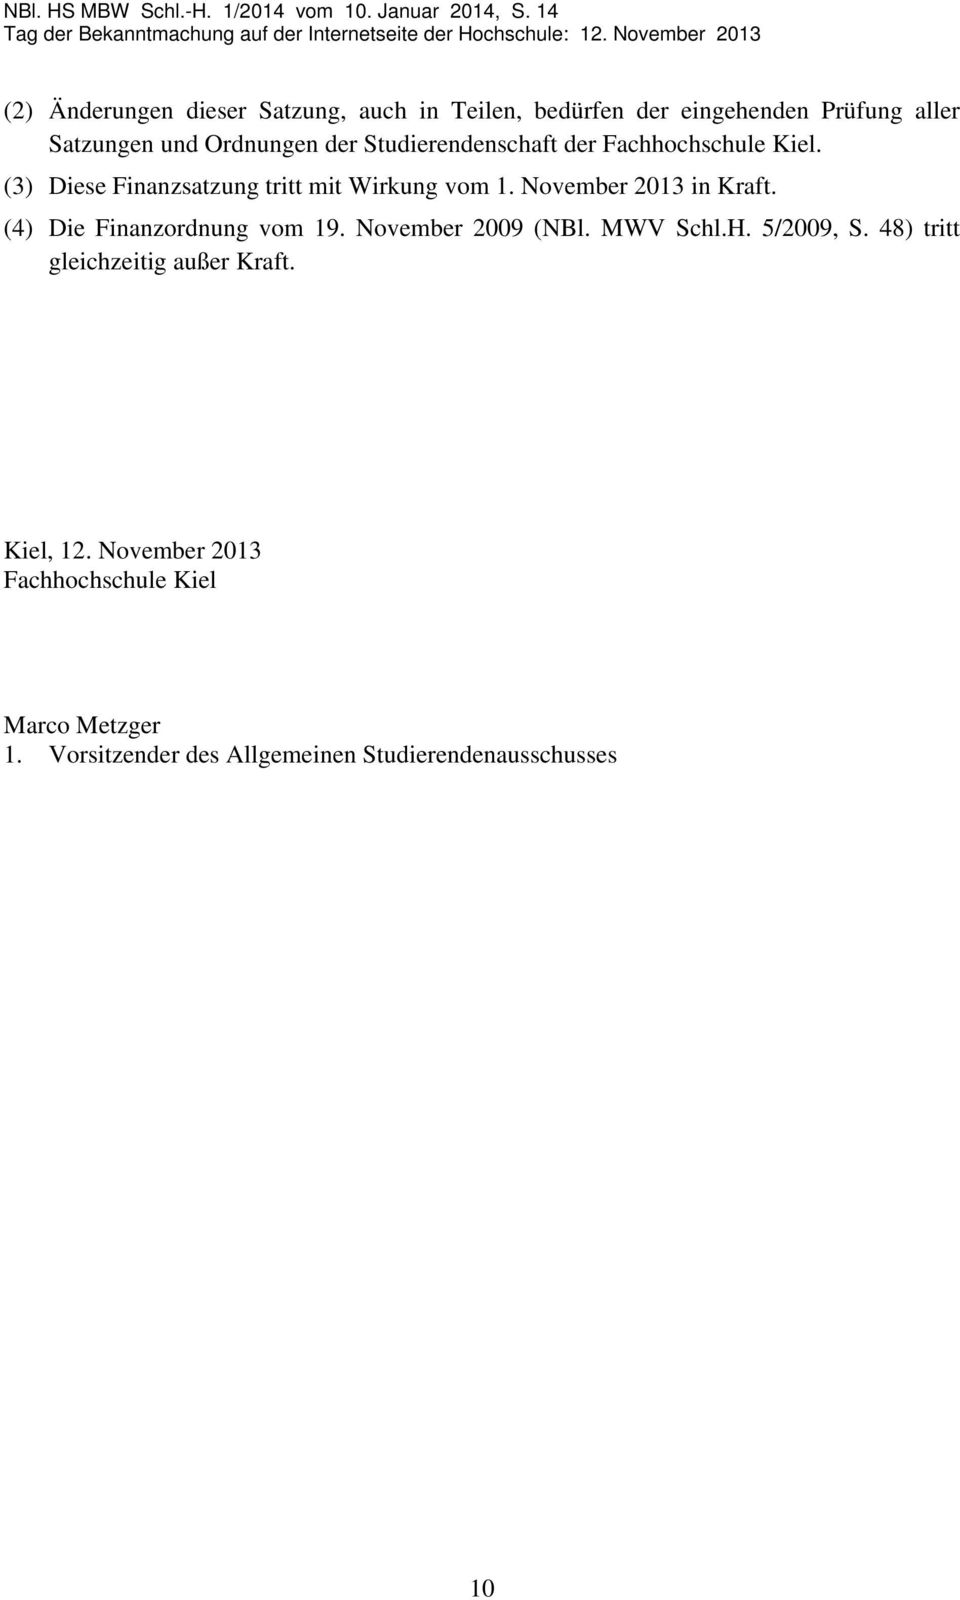 November 2013 in Kraft. (4) Die Finanzordnung vom 19. November 2009 (NBl. MWV Schl.H. 5/2009, S.